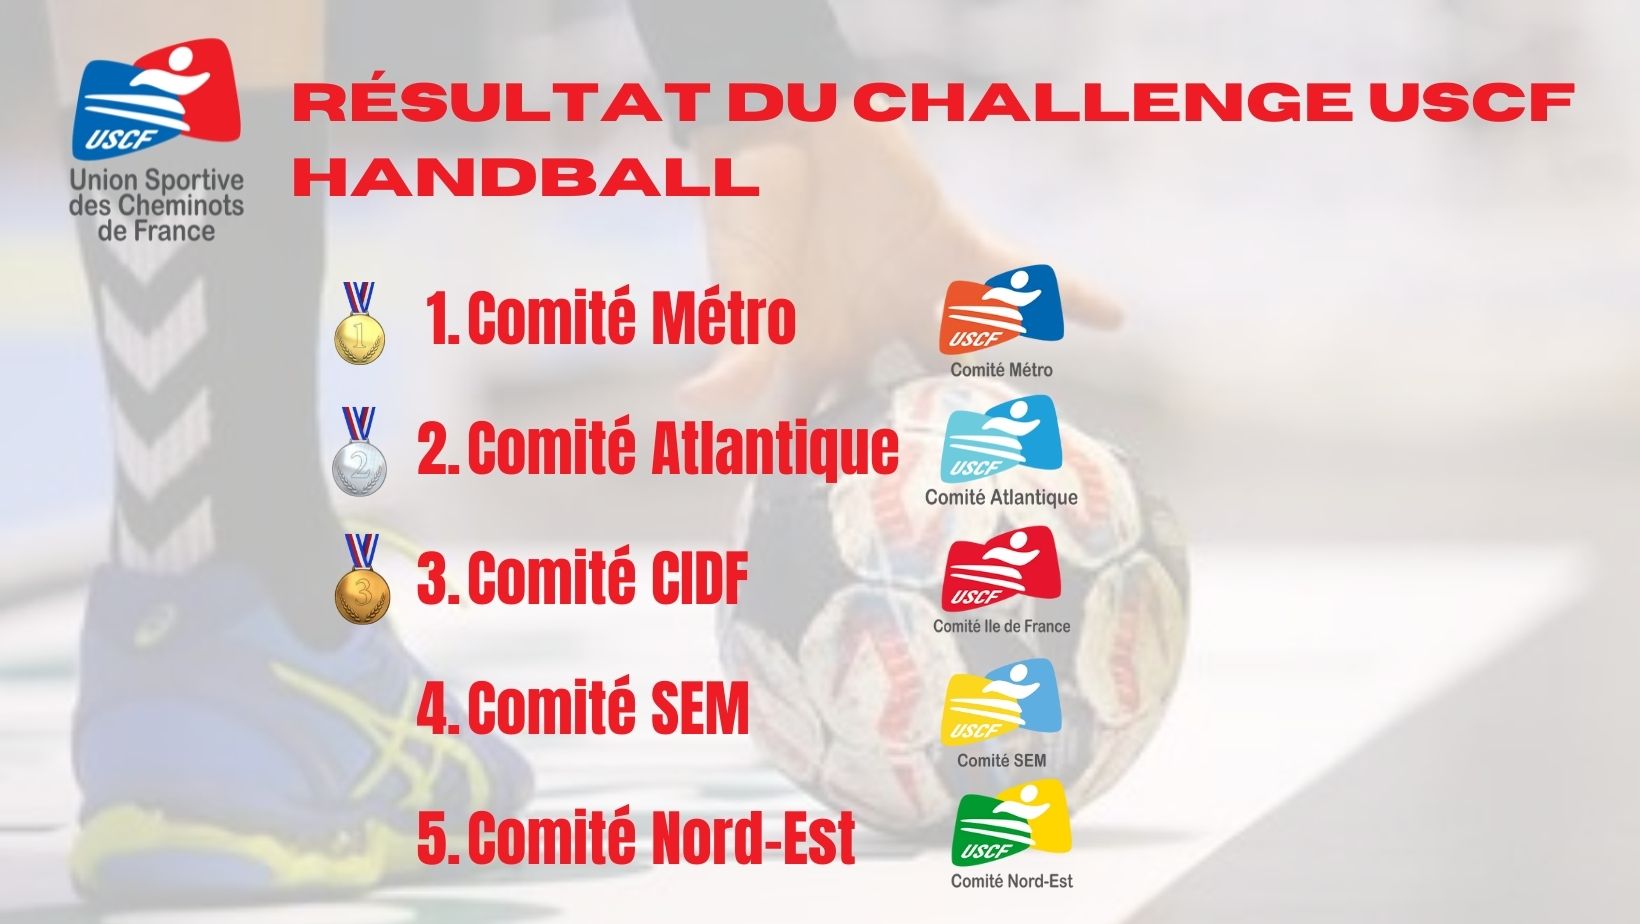 Le Comité Métro remporte le Challenge de Handball USCF